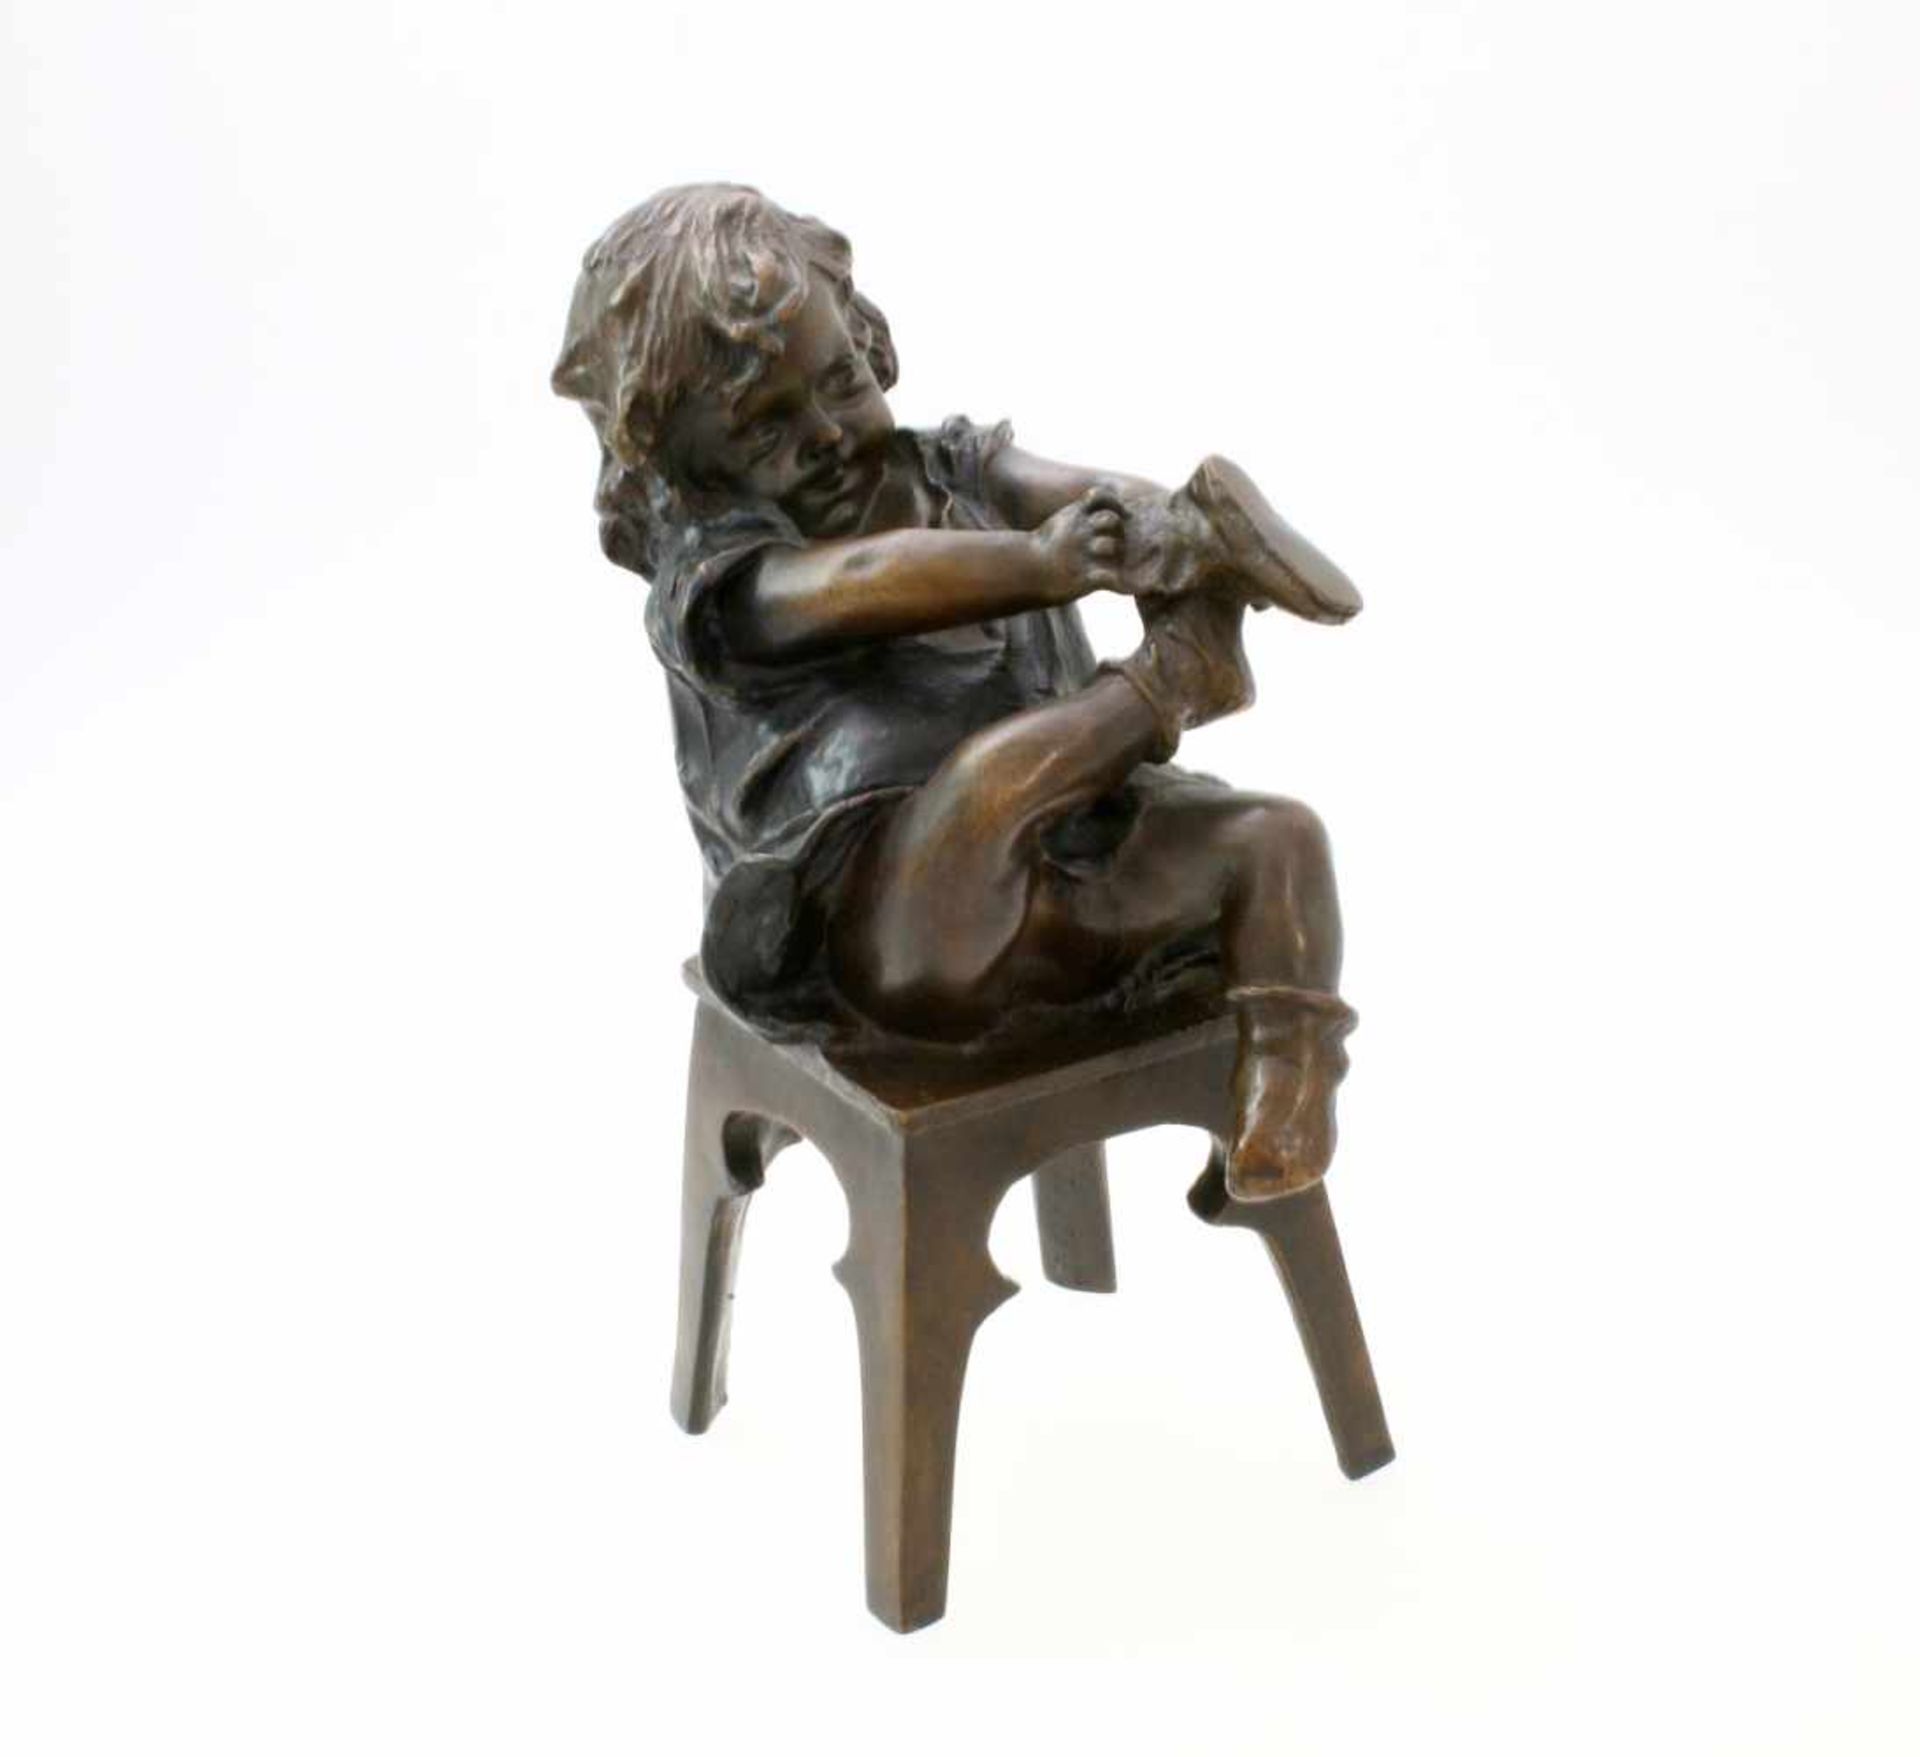 Bronzeskulptur "Kleines Mädchen beim Schuh anziehen" von Juan Clara Ayats (1875 - 1958) Die Skulptur